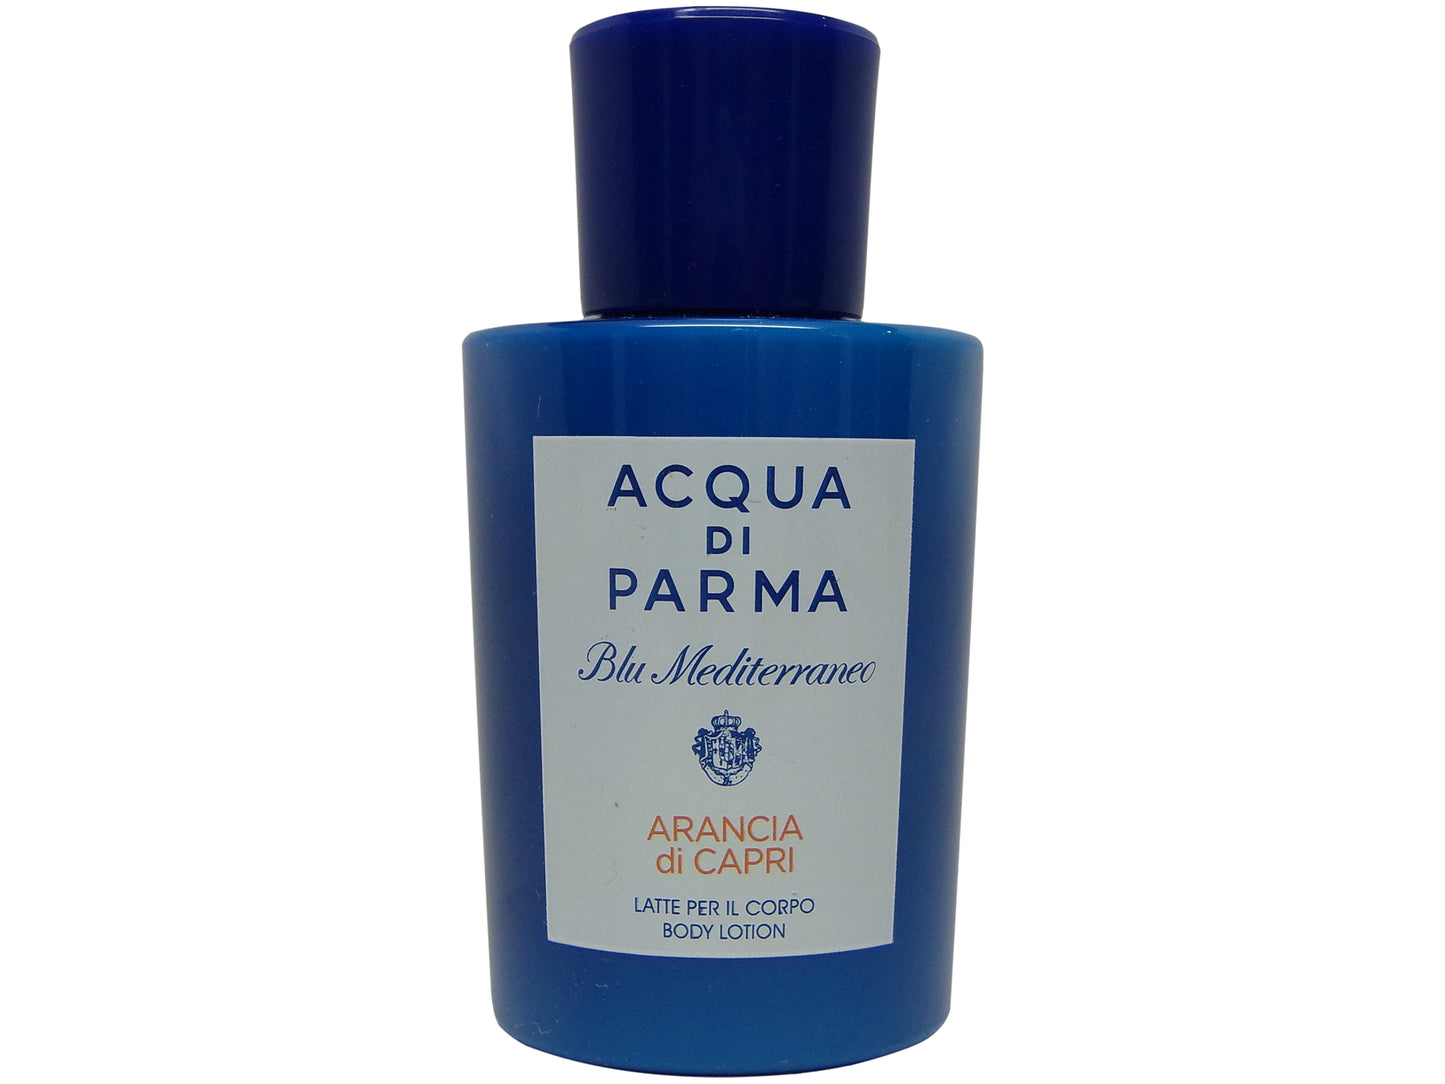 Acqua Di Parma Blu Mediterraneo  Arancia di Capri Body Lotion 2.5oz Bottle